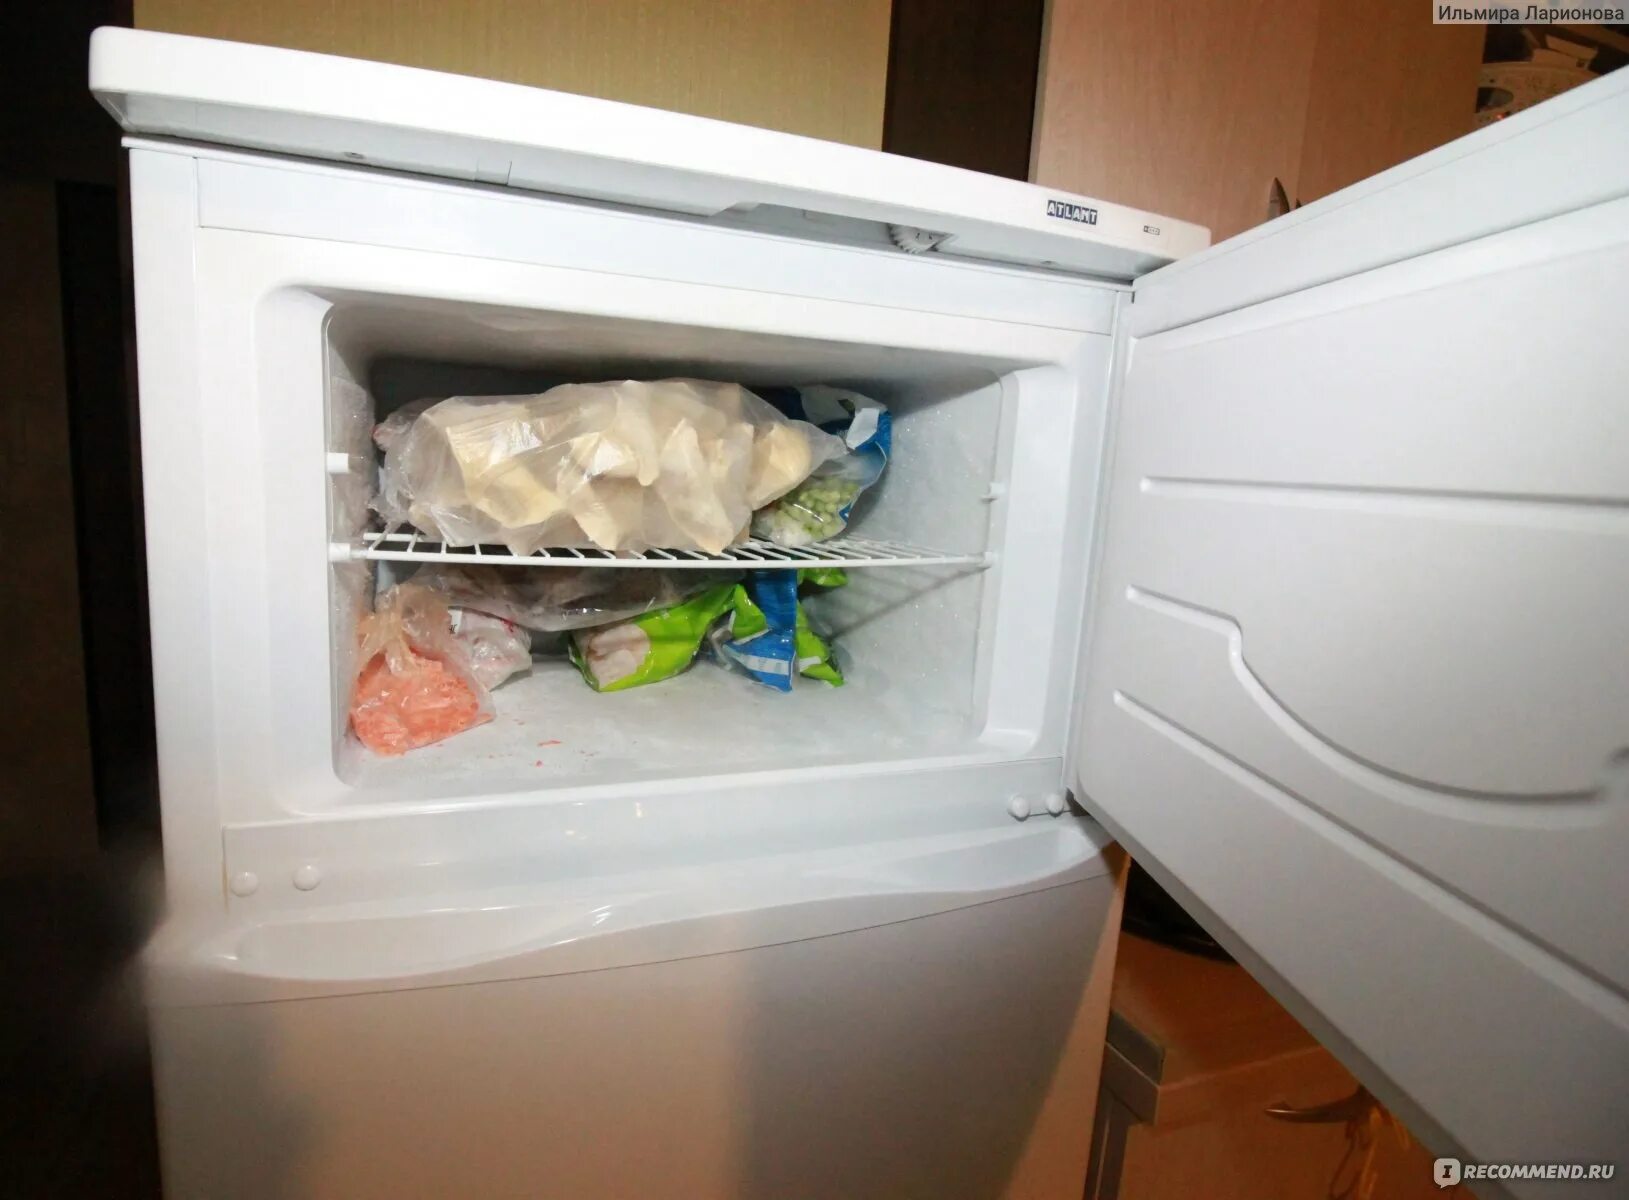 Разморозка холодильника Атлант двухкамерный. Разморозка холодильника Атлант. Разморозка холодильника Атлант однокамерный. Холодильник Атлант разморозить морозилку. Как разморозить морозилку атланта